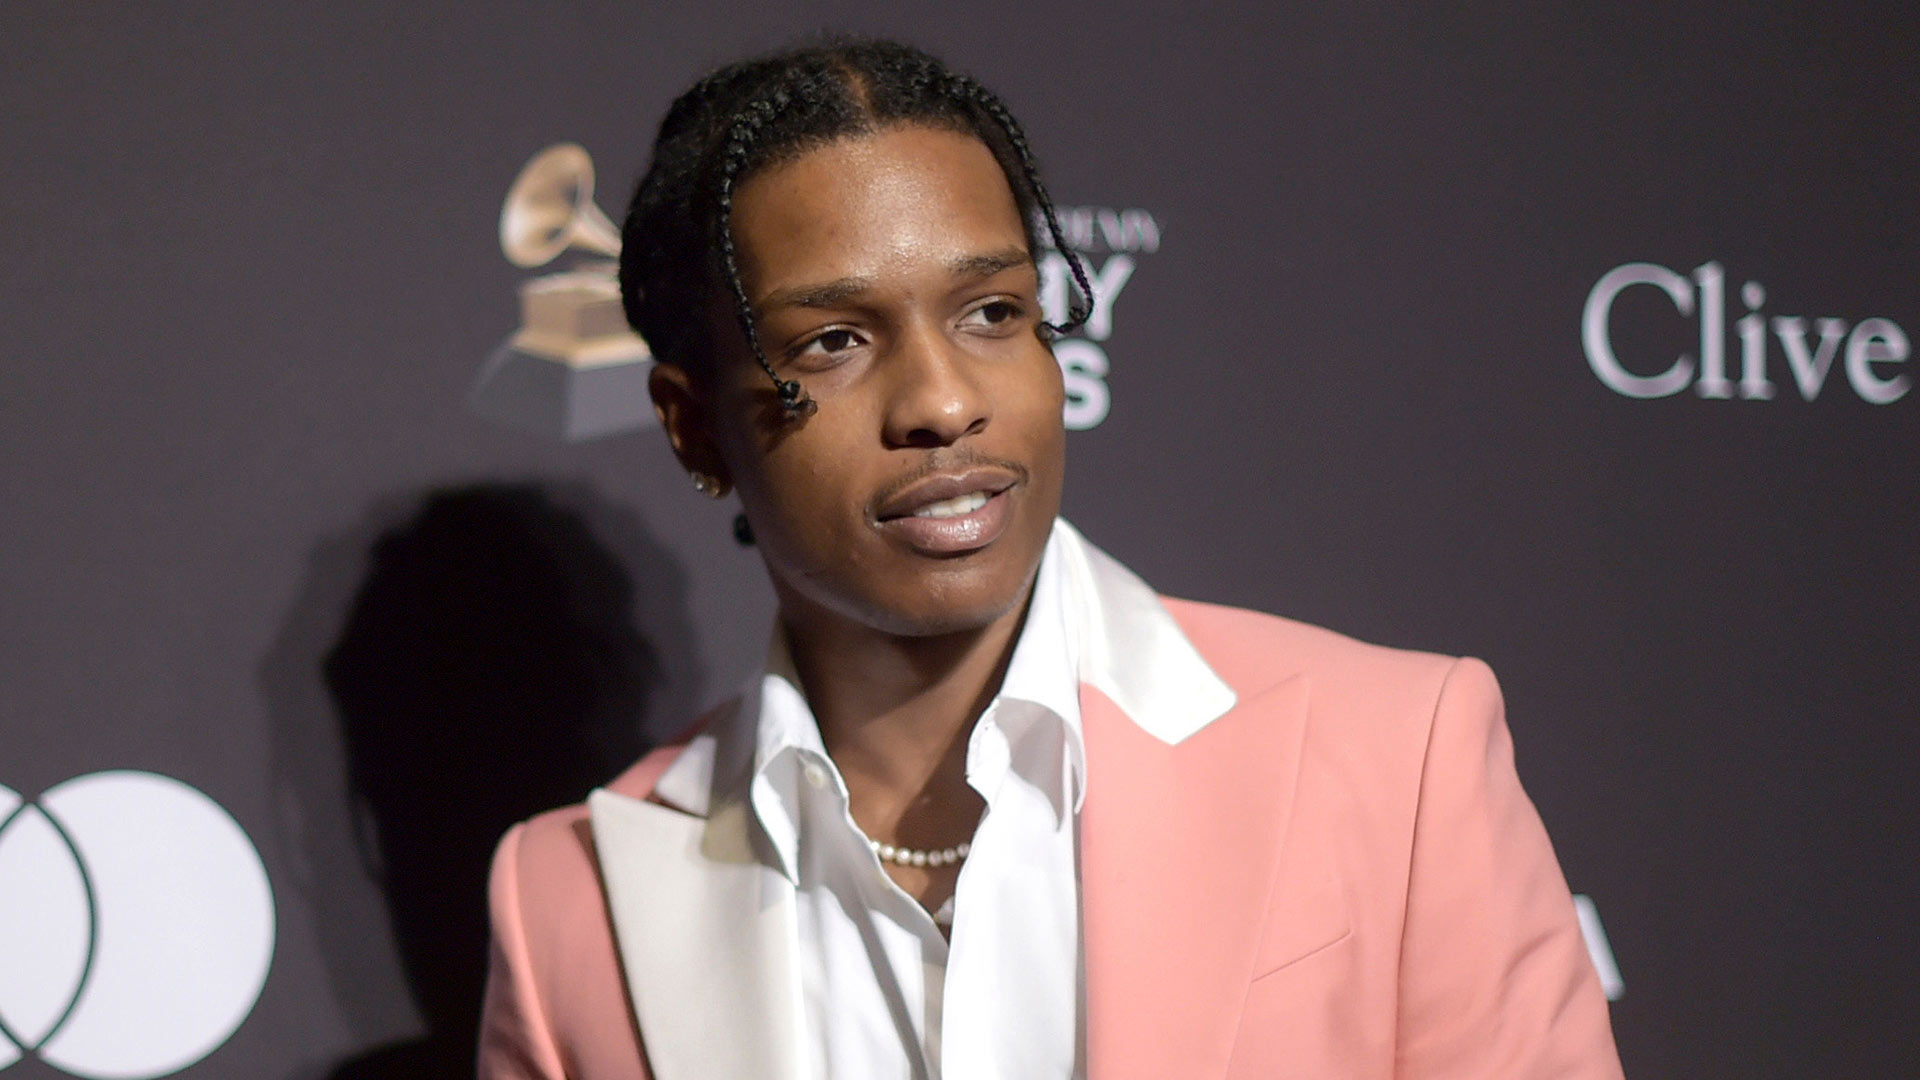 A$AP Rocky, declarado culpable de agresión por un tribunal sueco, pero evita la prisión